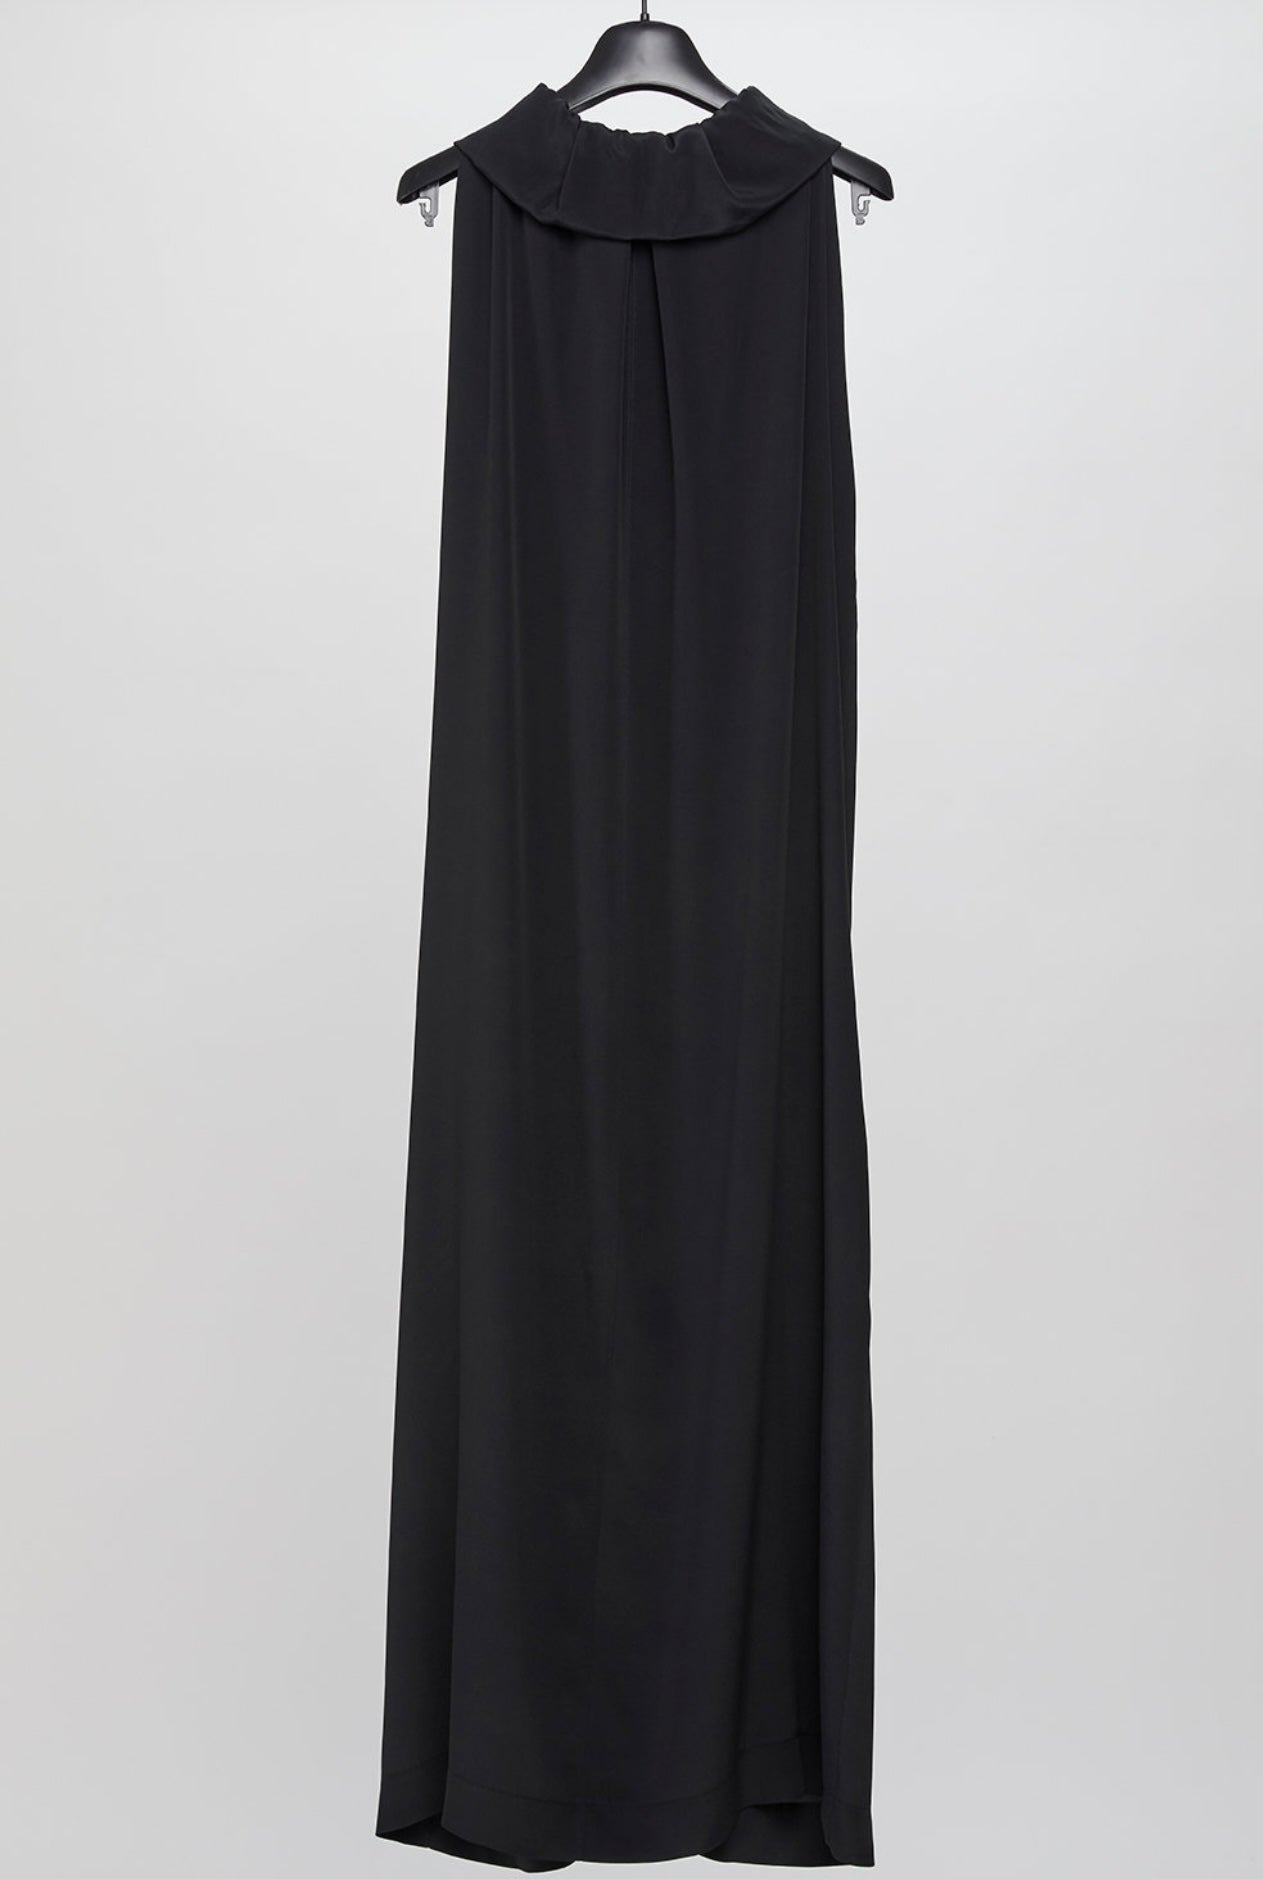 Hache- Clio Dress in Black